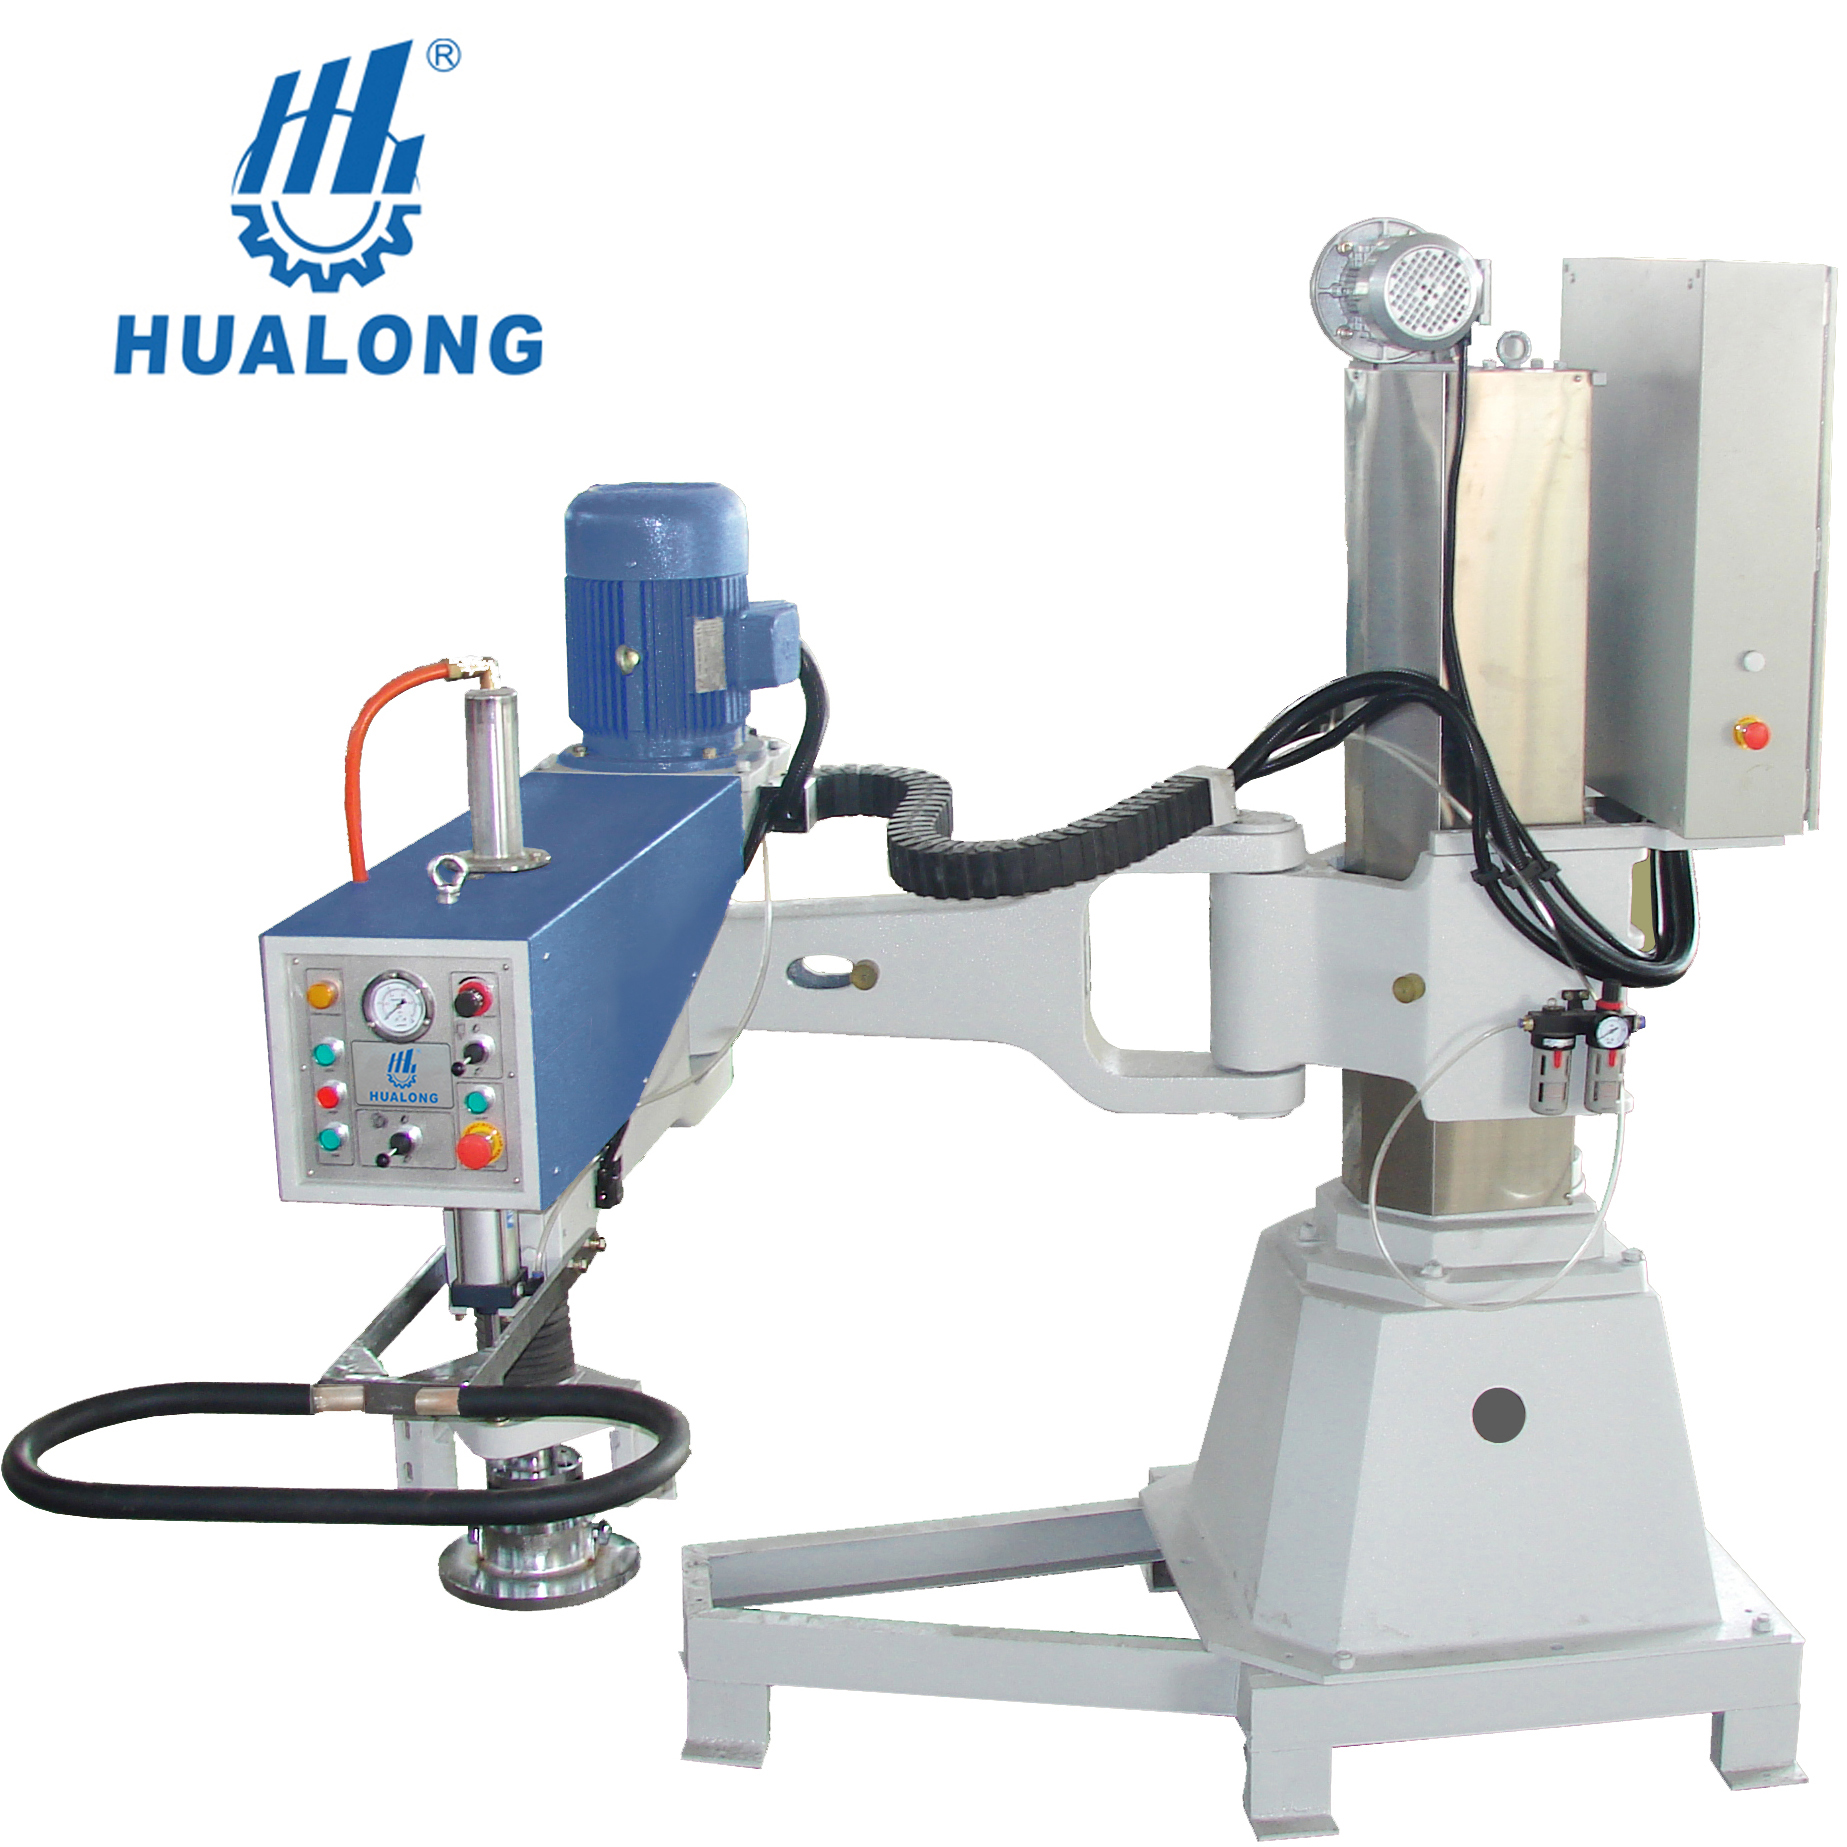 Machine de polissage de pierre Hualong pour granit HHMS-1800